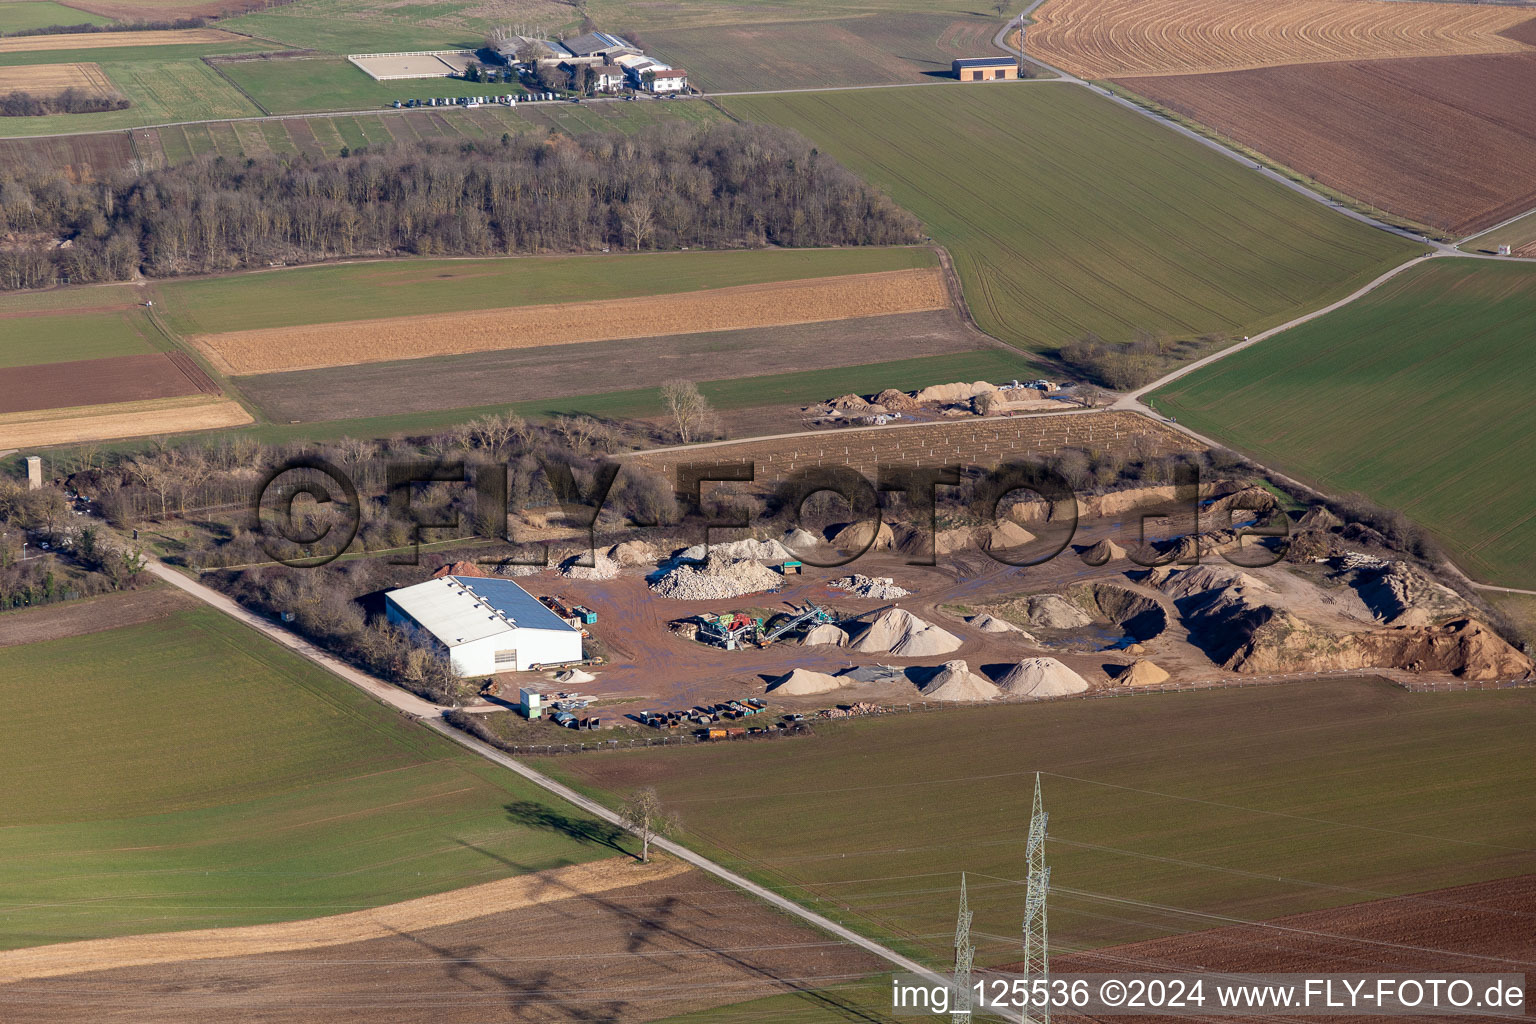 Vue aérienne de Centre de recyclage à Plankstadt dans le département Bade-Wurtemberg, Allemagne